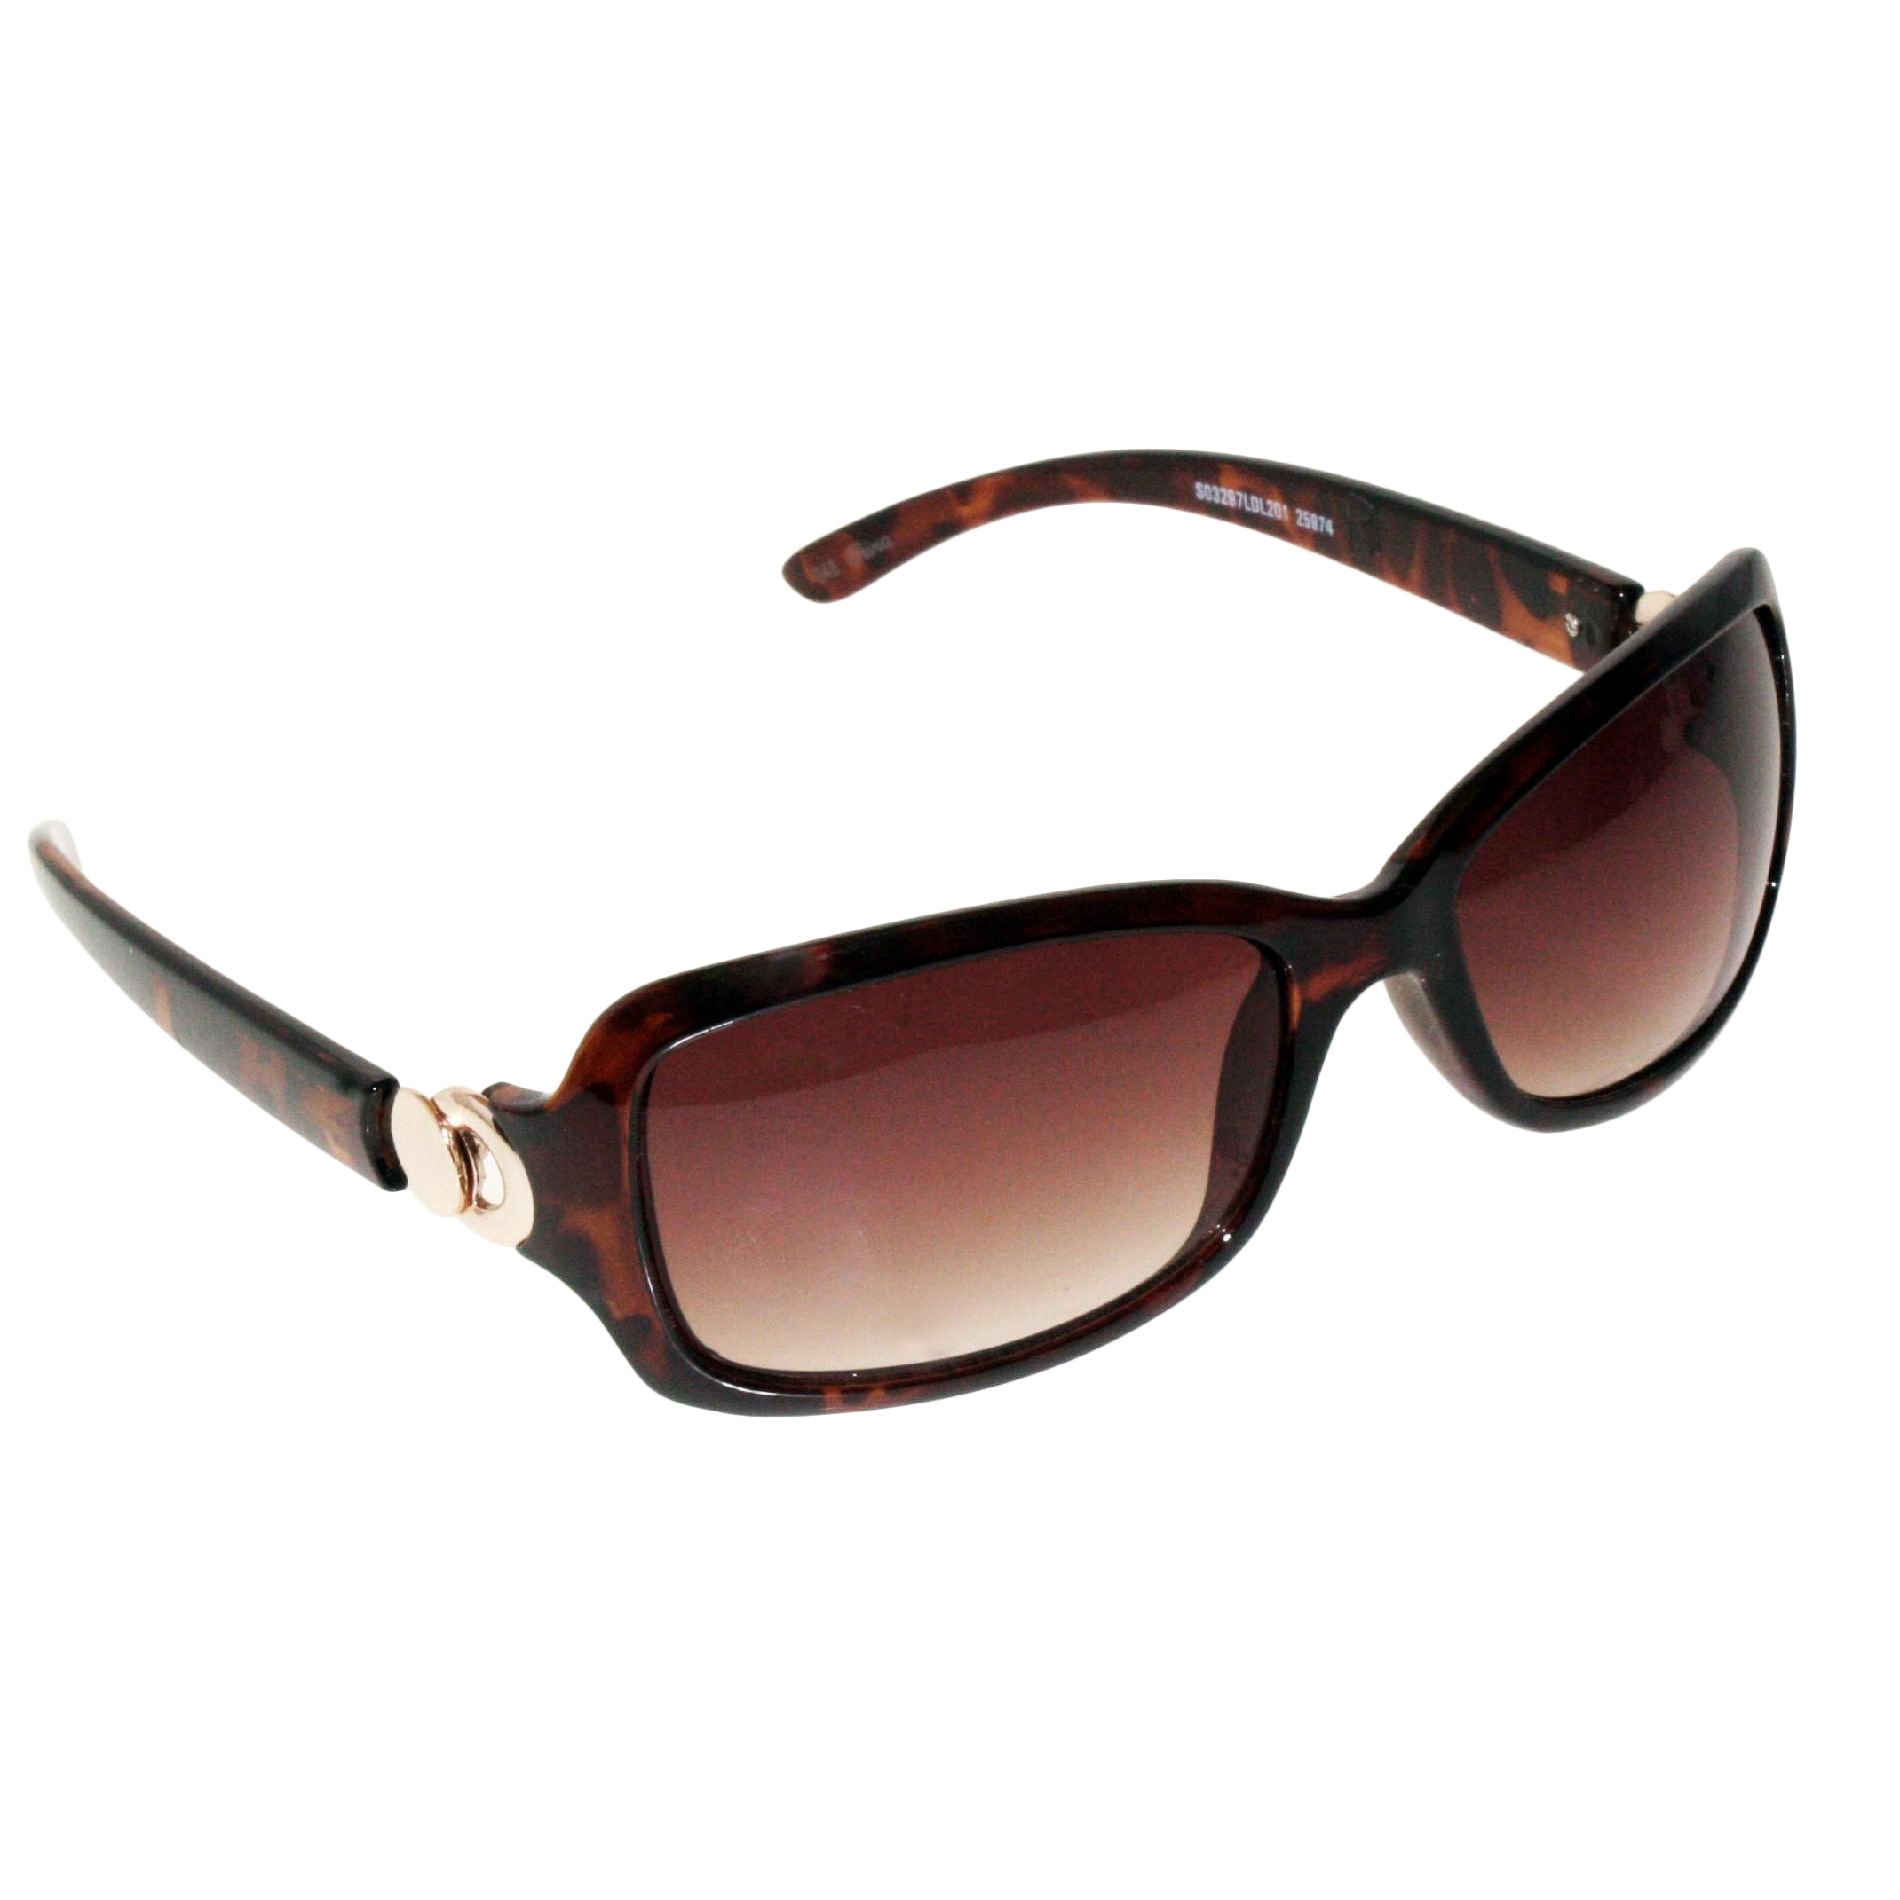 Dockers Women's Rectangular Sunglasses